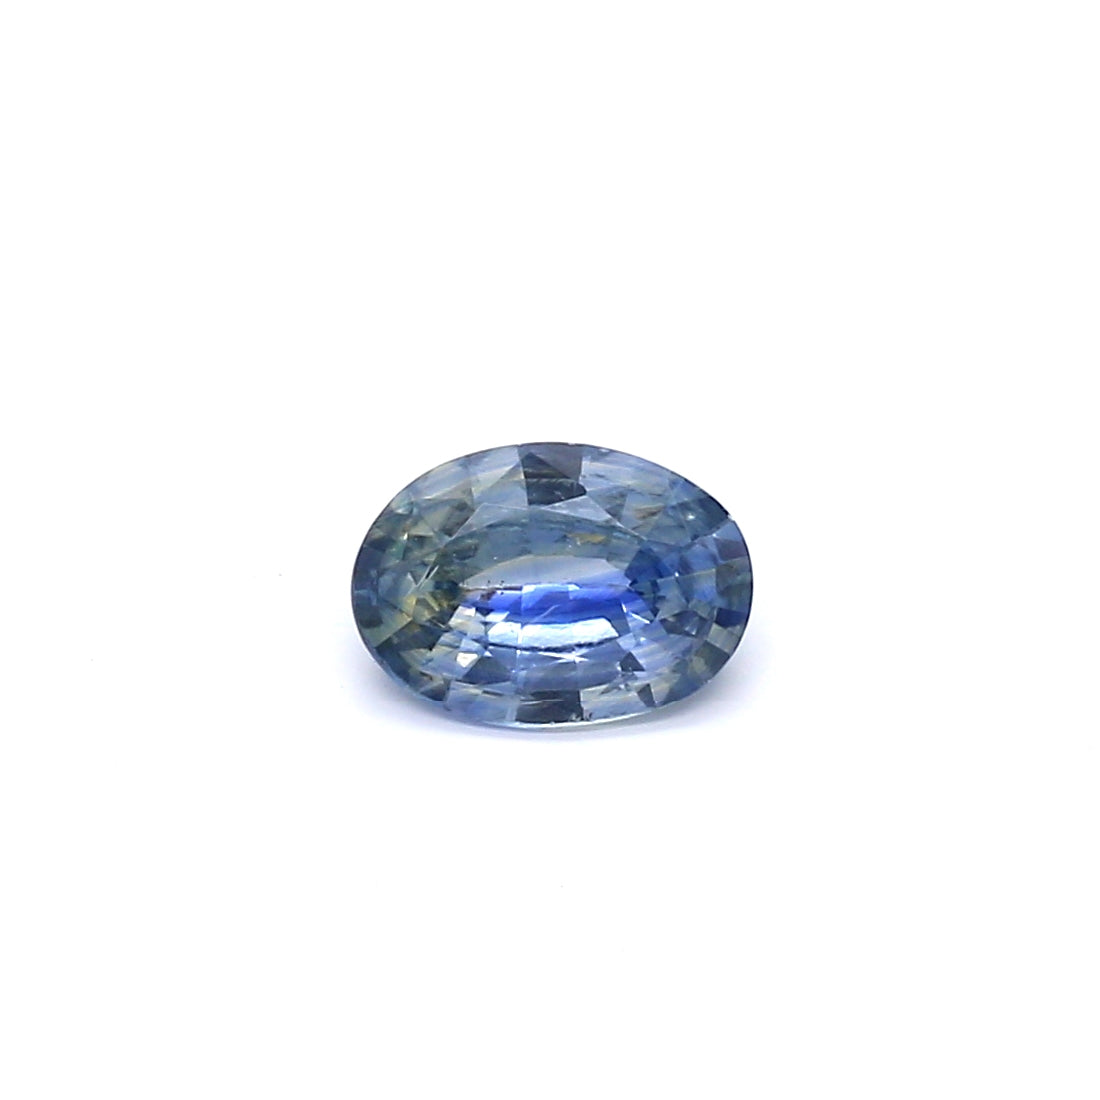 0.76ct Greenish Blue, Oval Sapphire, Heated, Sri Lanka - 7.03 x 5.02 x 2.58mm